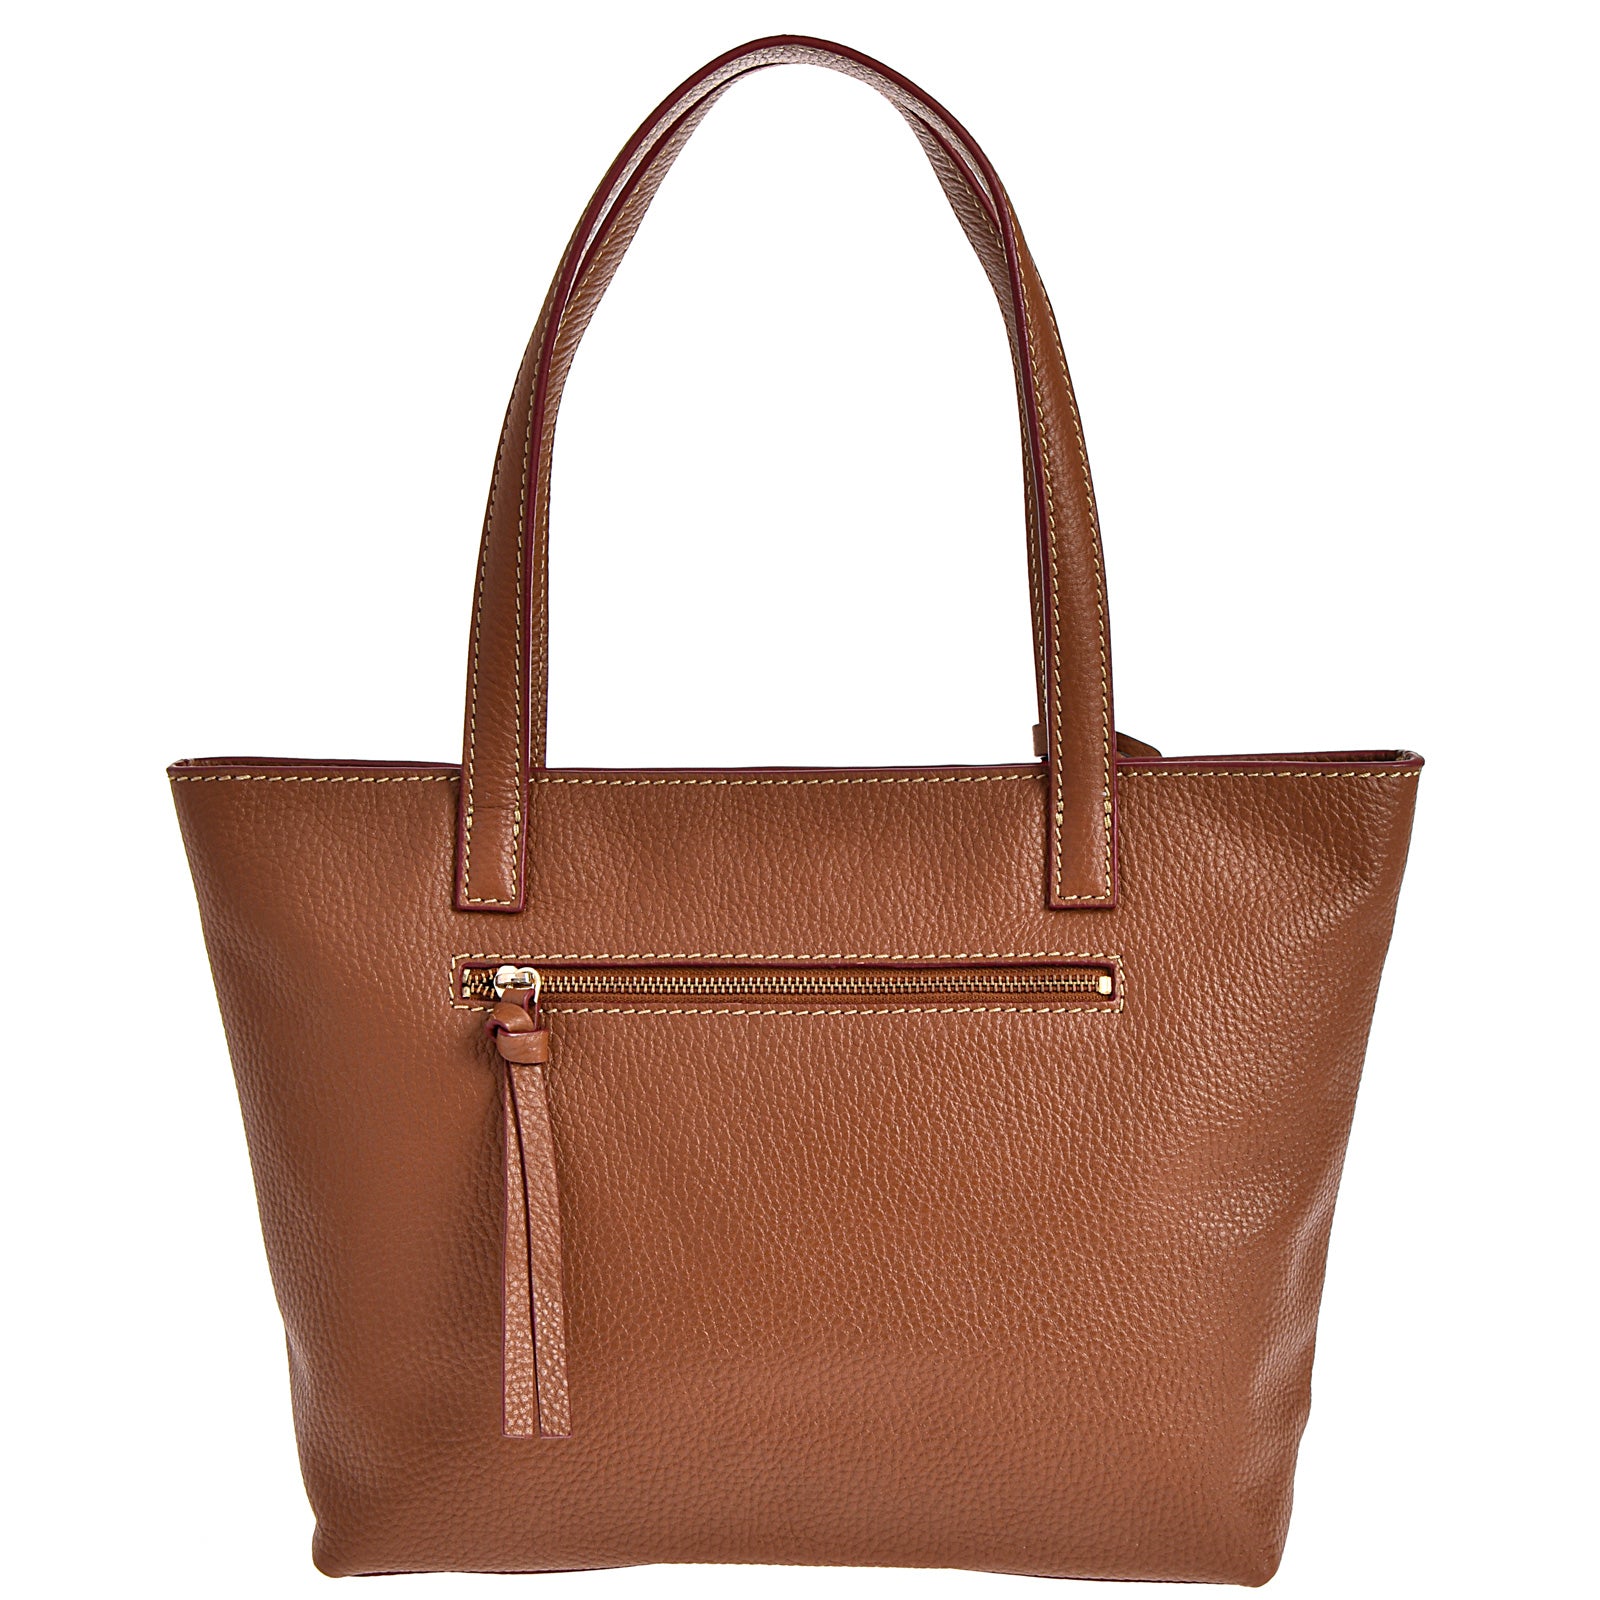 EDEN - Grained leather shoulder handbag